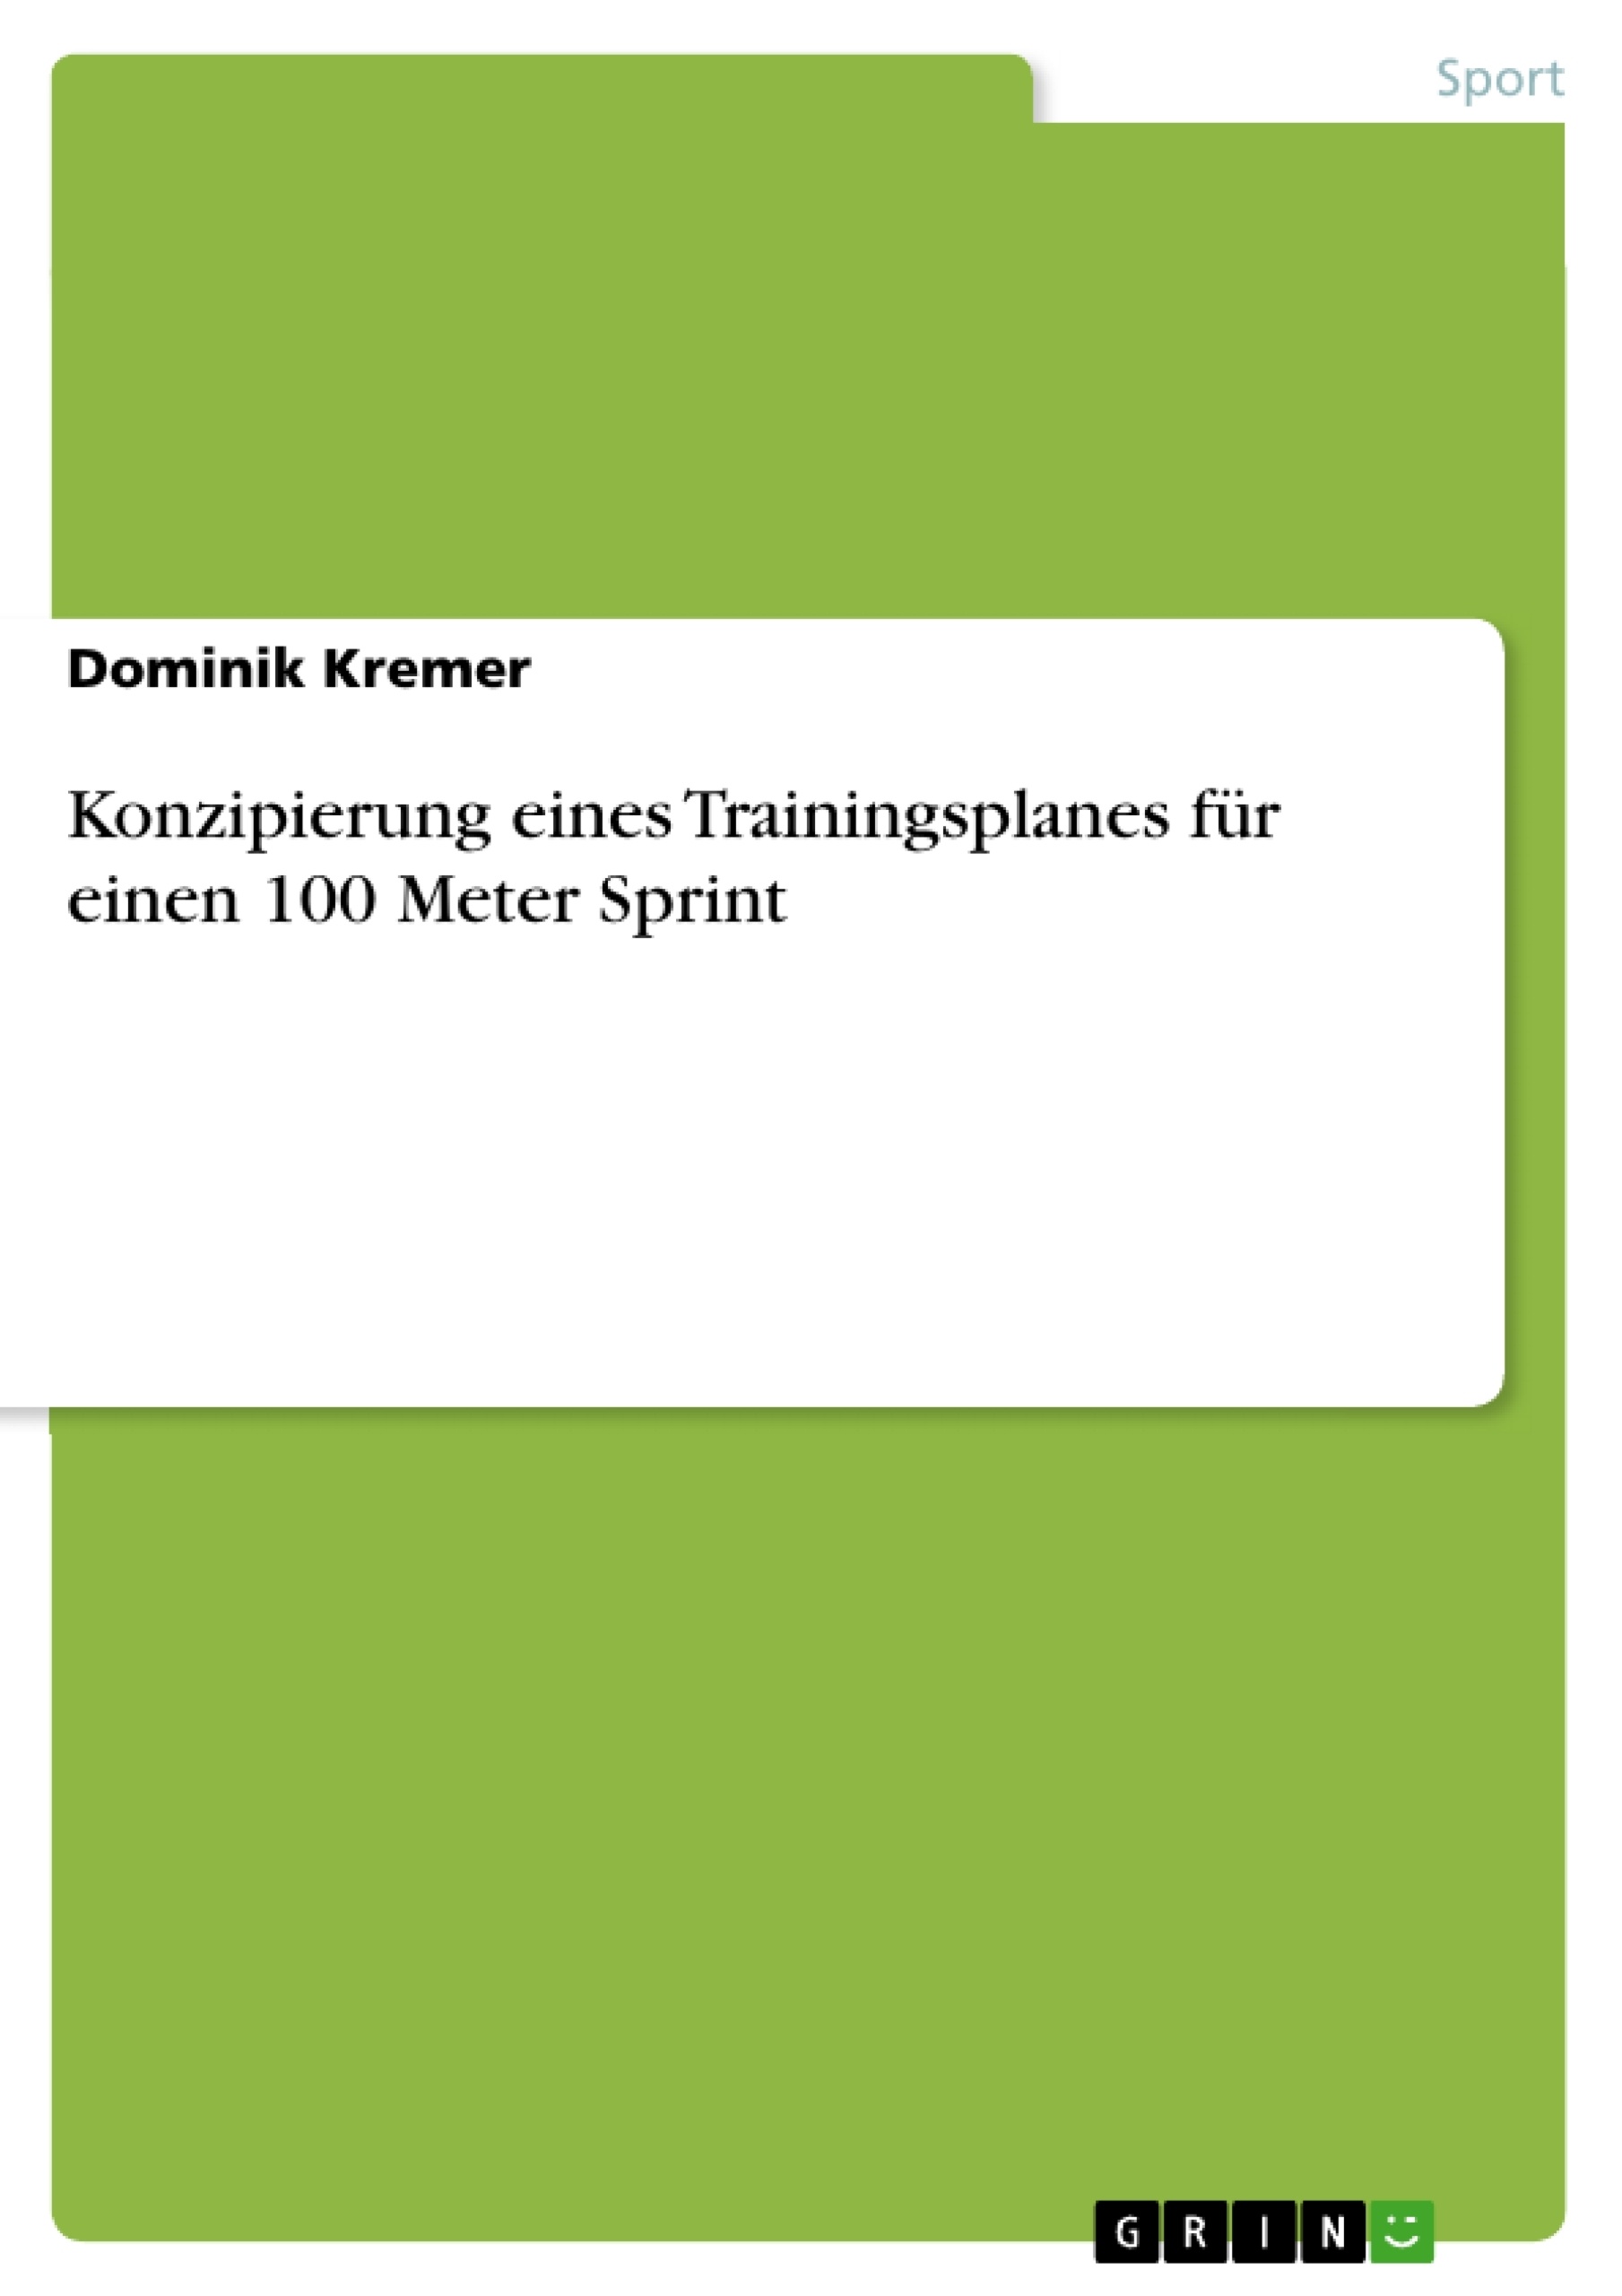 Title: Konzipierung eines Trainingsplanes für einen 100 Meter Sprint